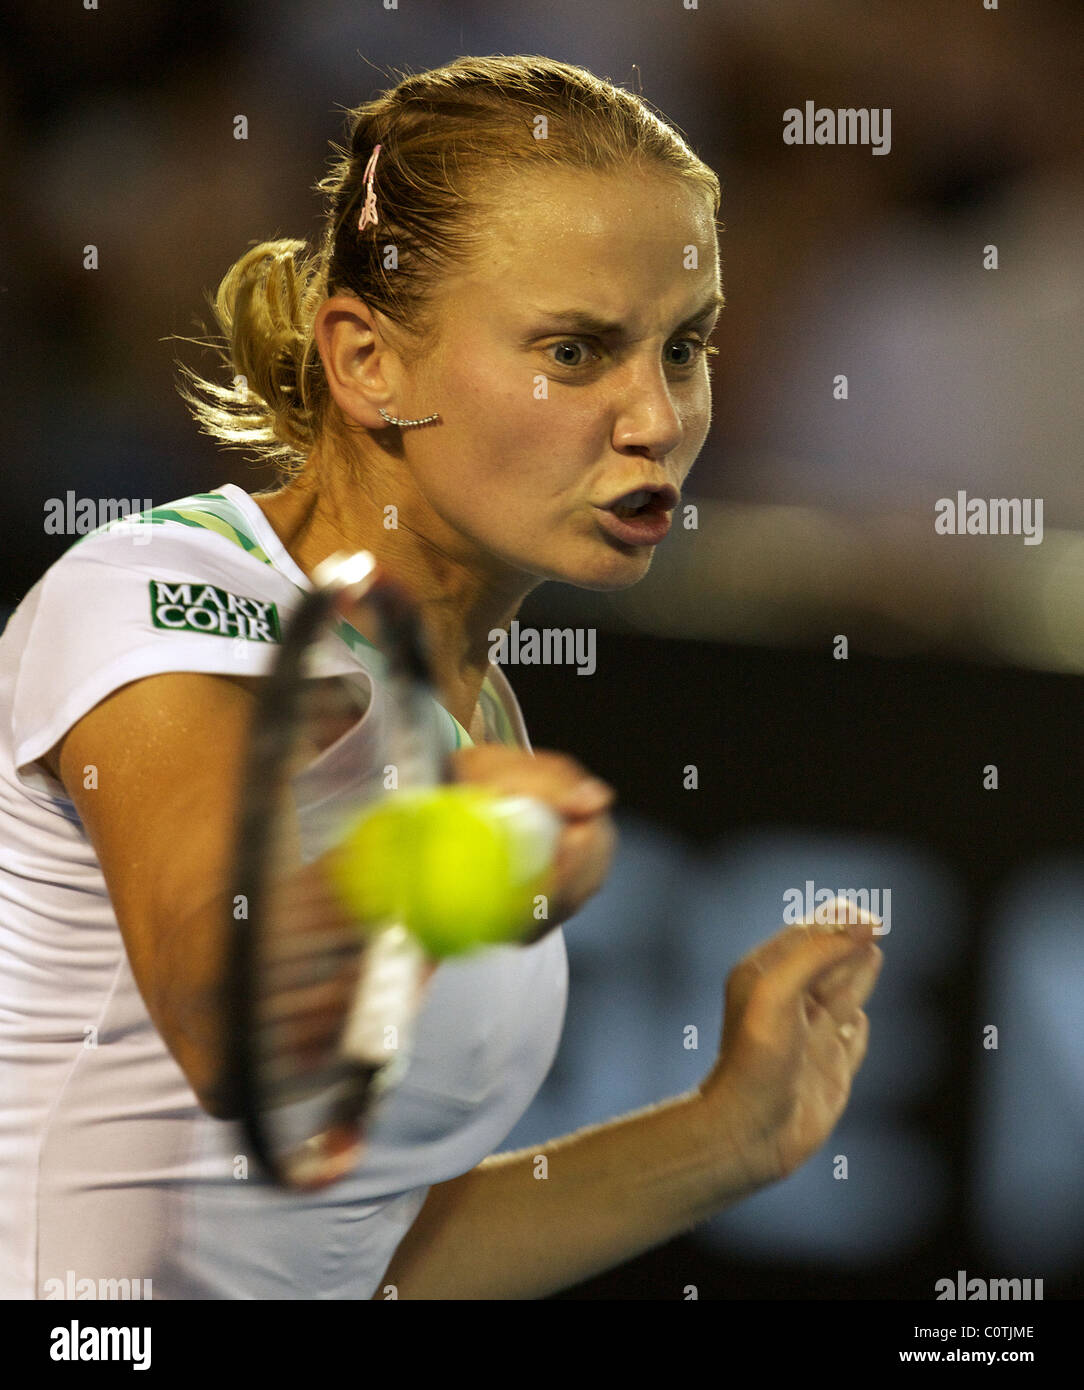 Jelena Dokic, Australia, in action at the Australian Open Tennis Tournament, Melbourne, Australia. Stock Photo